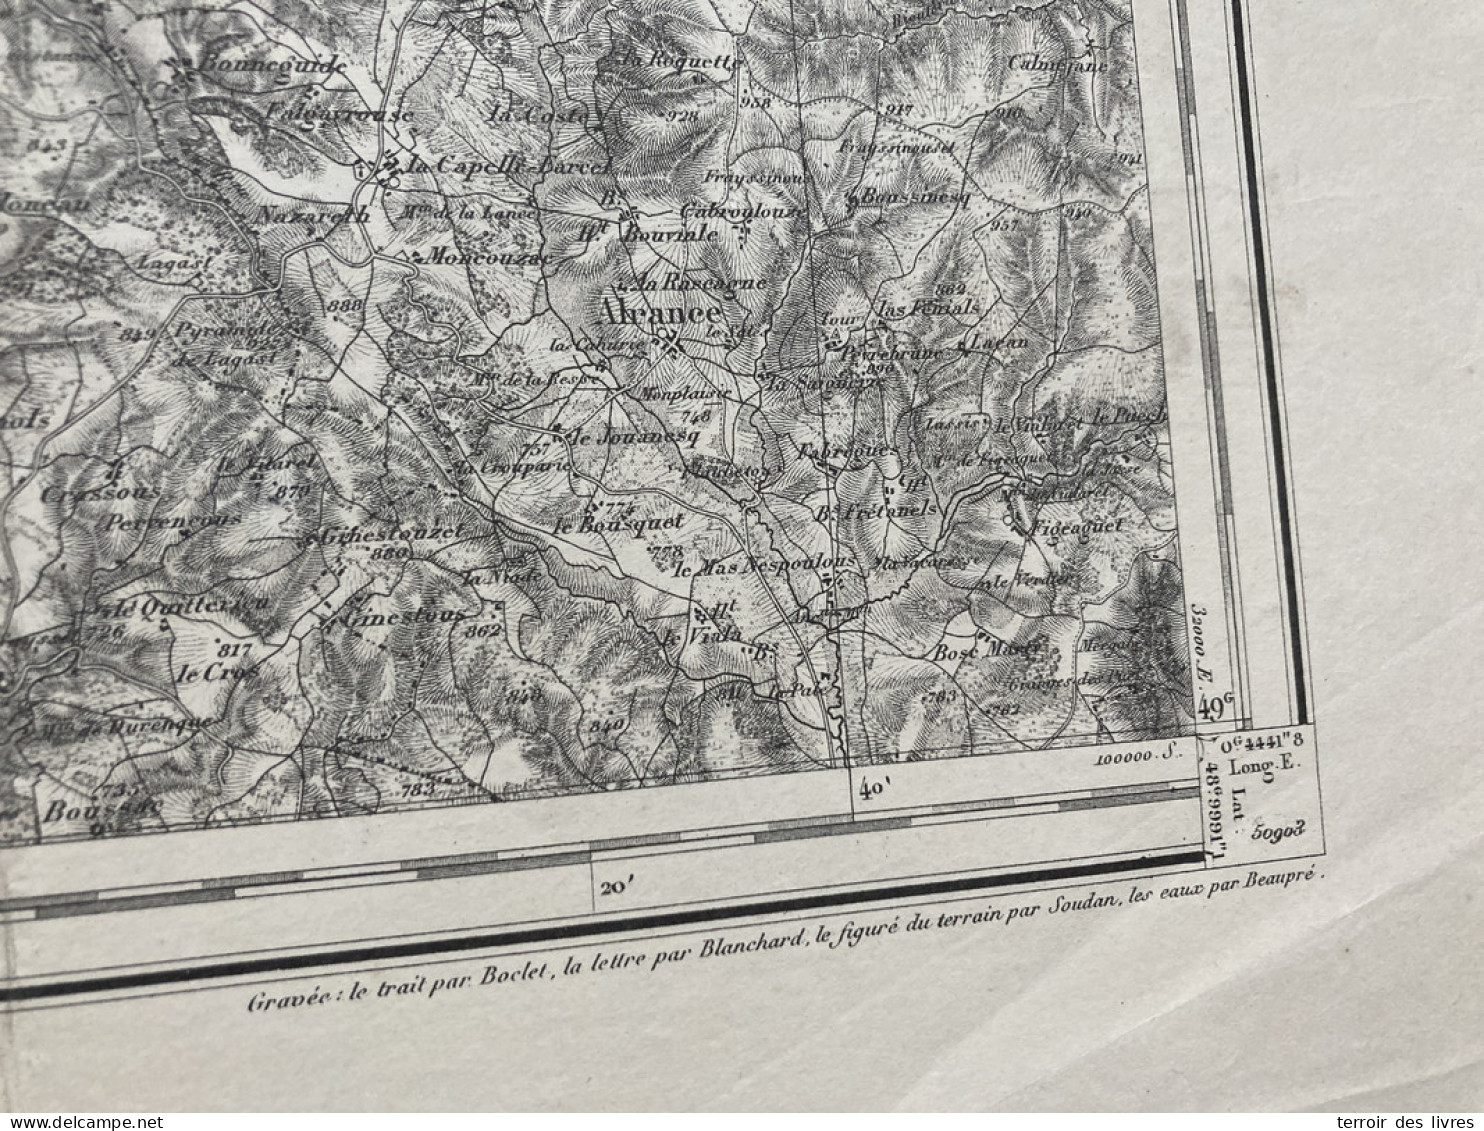 Carte état Major RODEZ S.E. 1893 35x54cm SAINTE JULIETTE SUR VIAUR CALMONT COMPS-LA-GRAND-VILLE CASSAGNES-BEGONHES SALMI - Landkarten